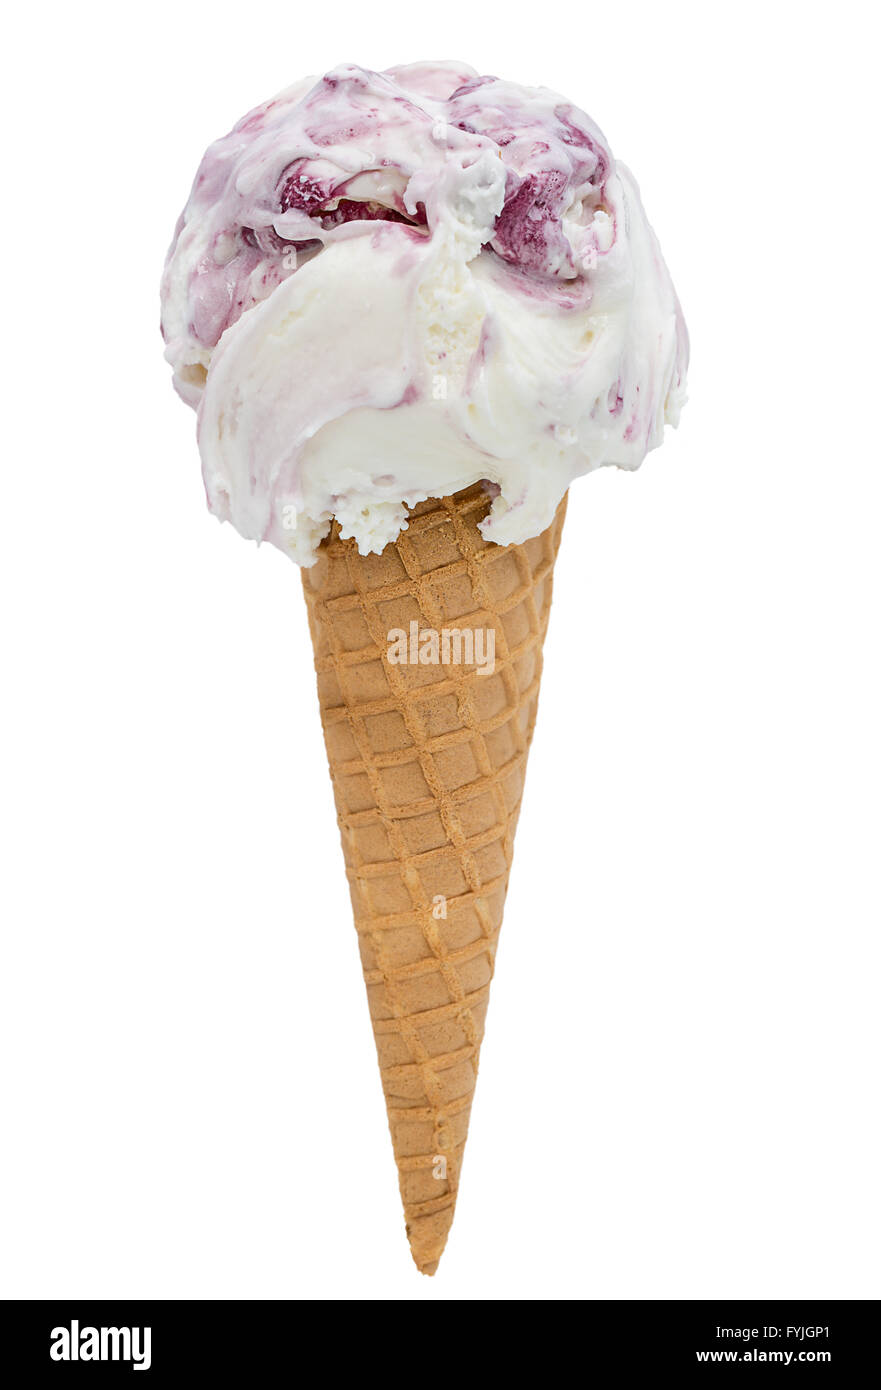 cherry ice cream Stock Photo